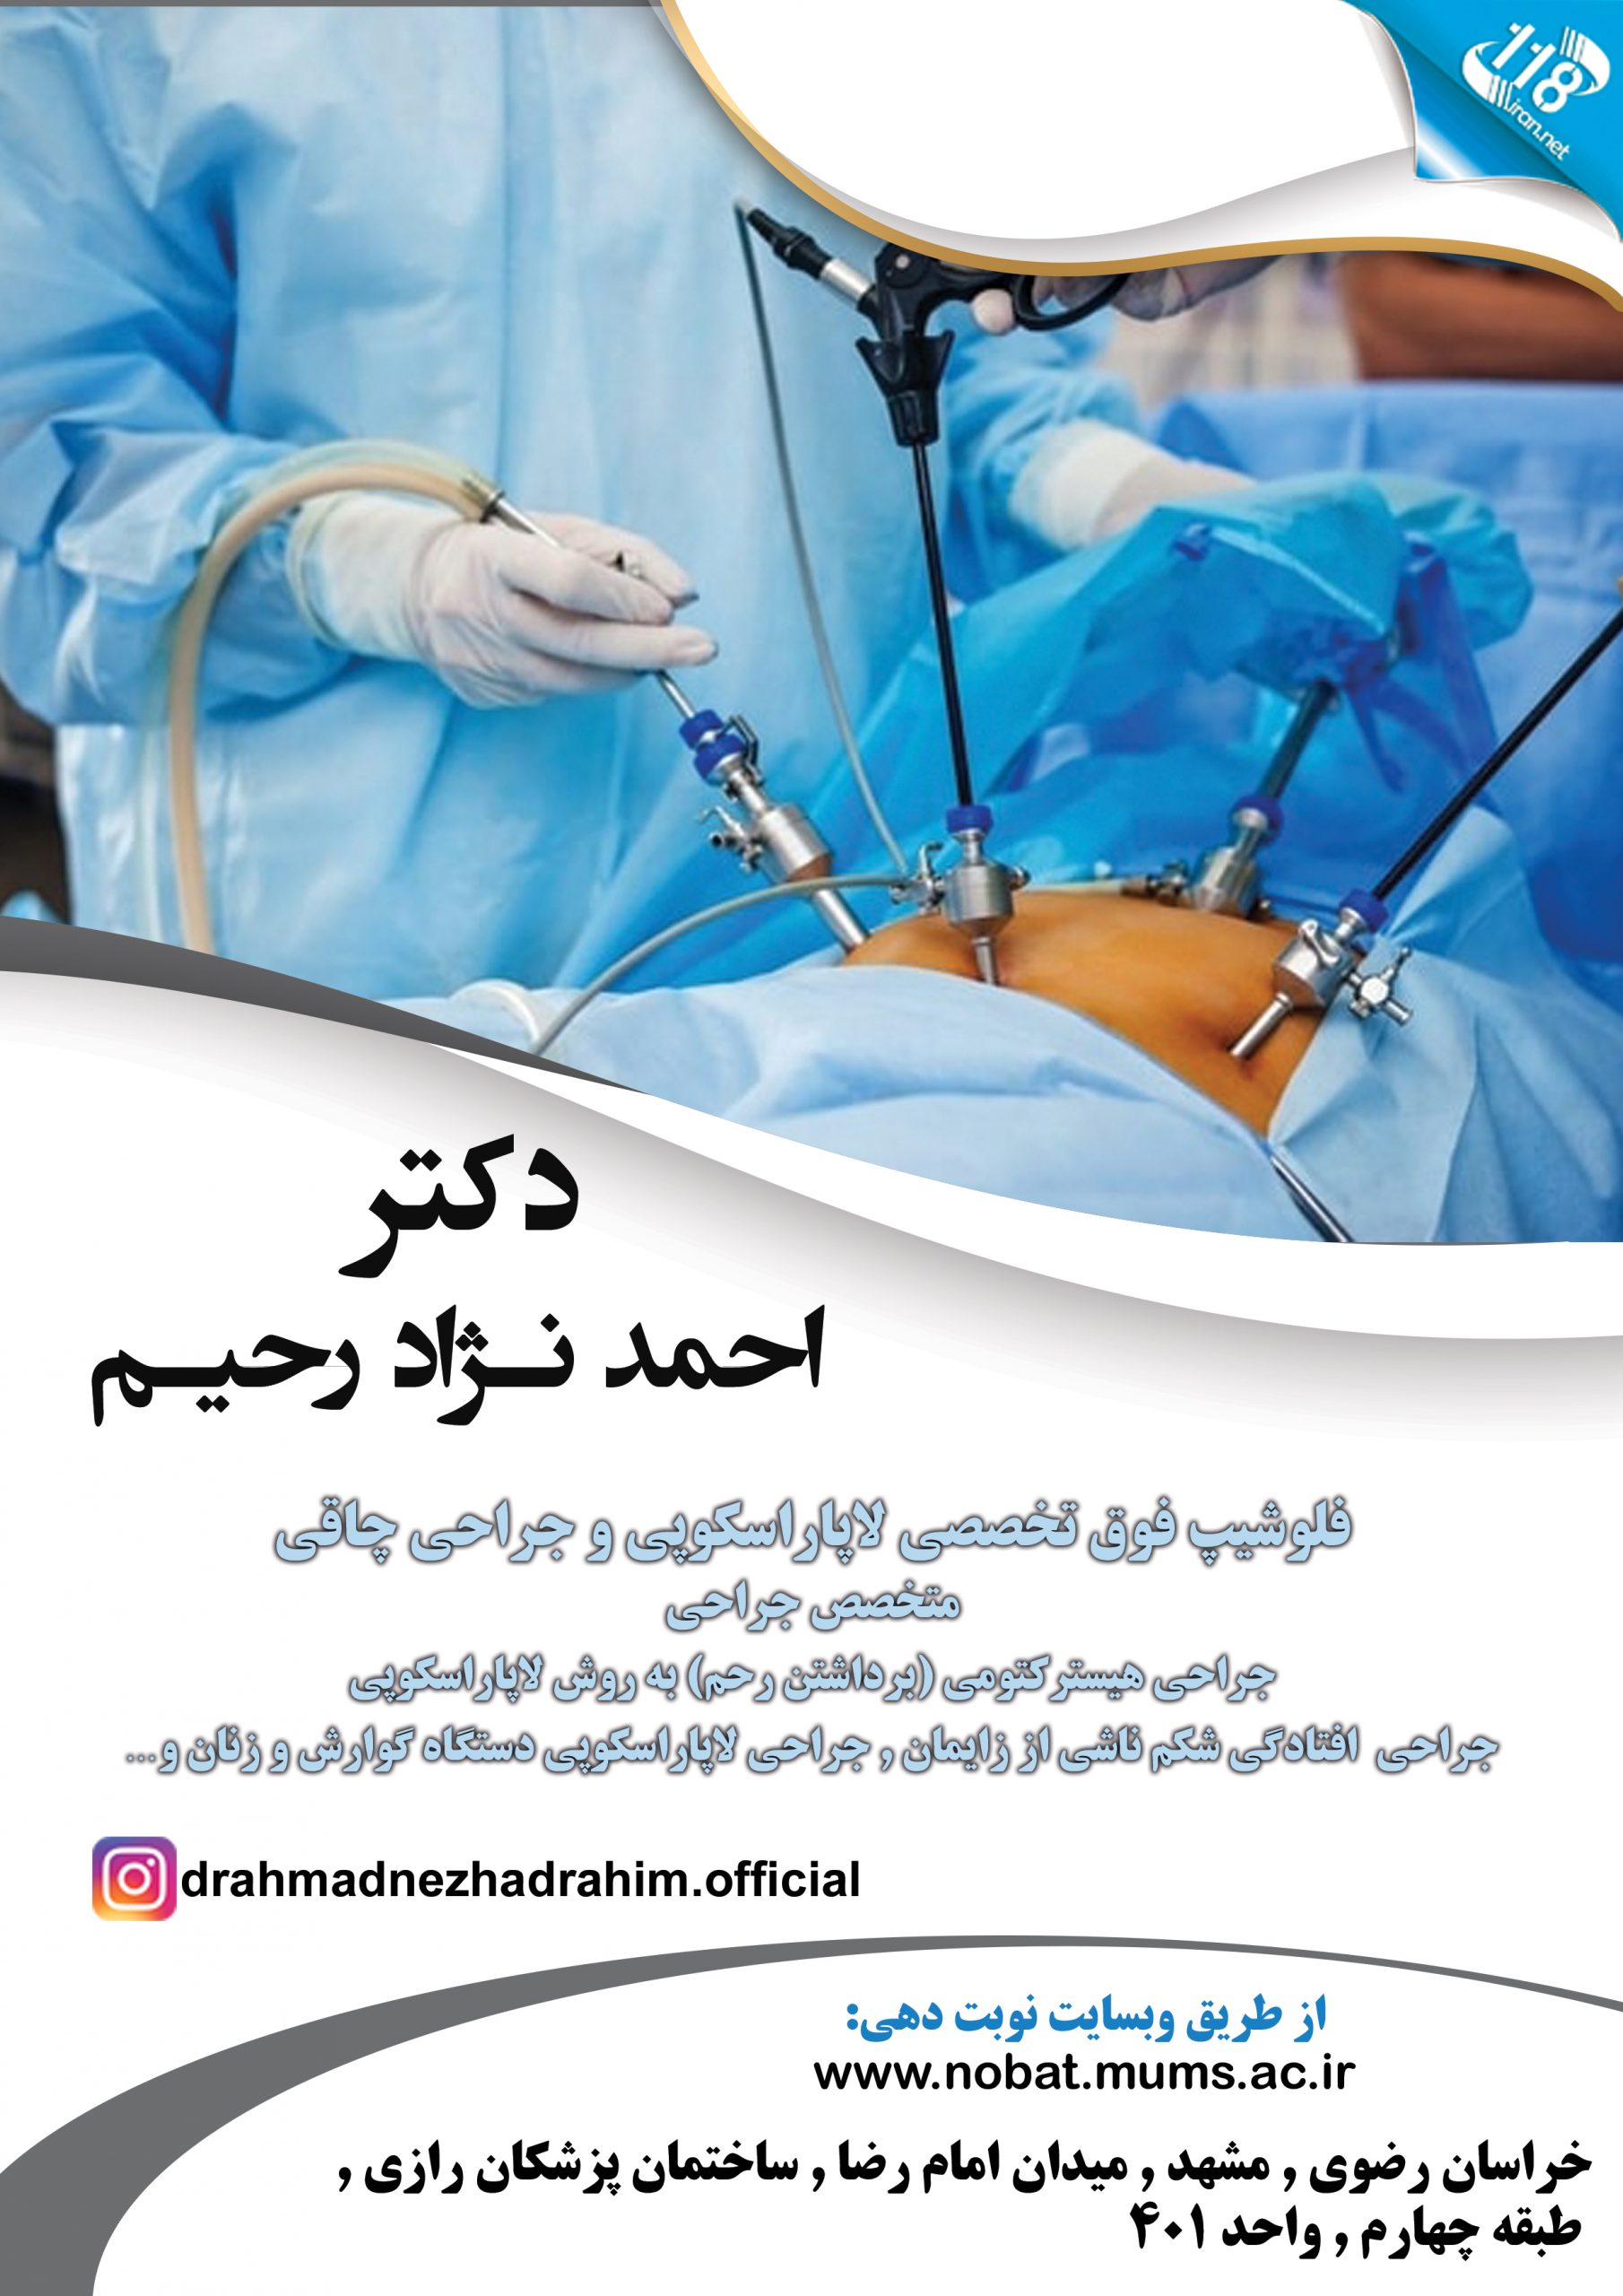  دکتر احمد نژاد رحیم در مشهد 